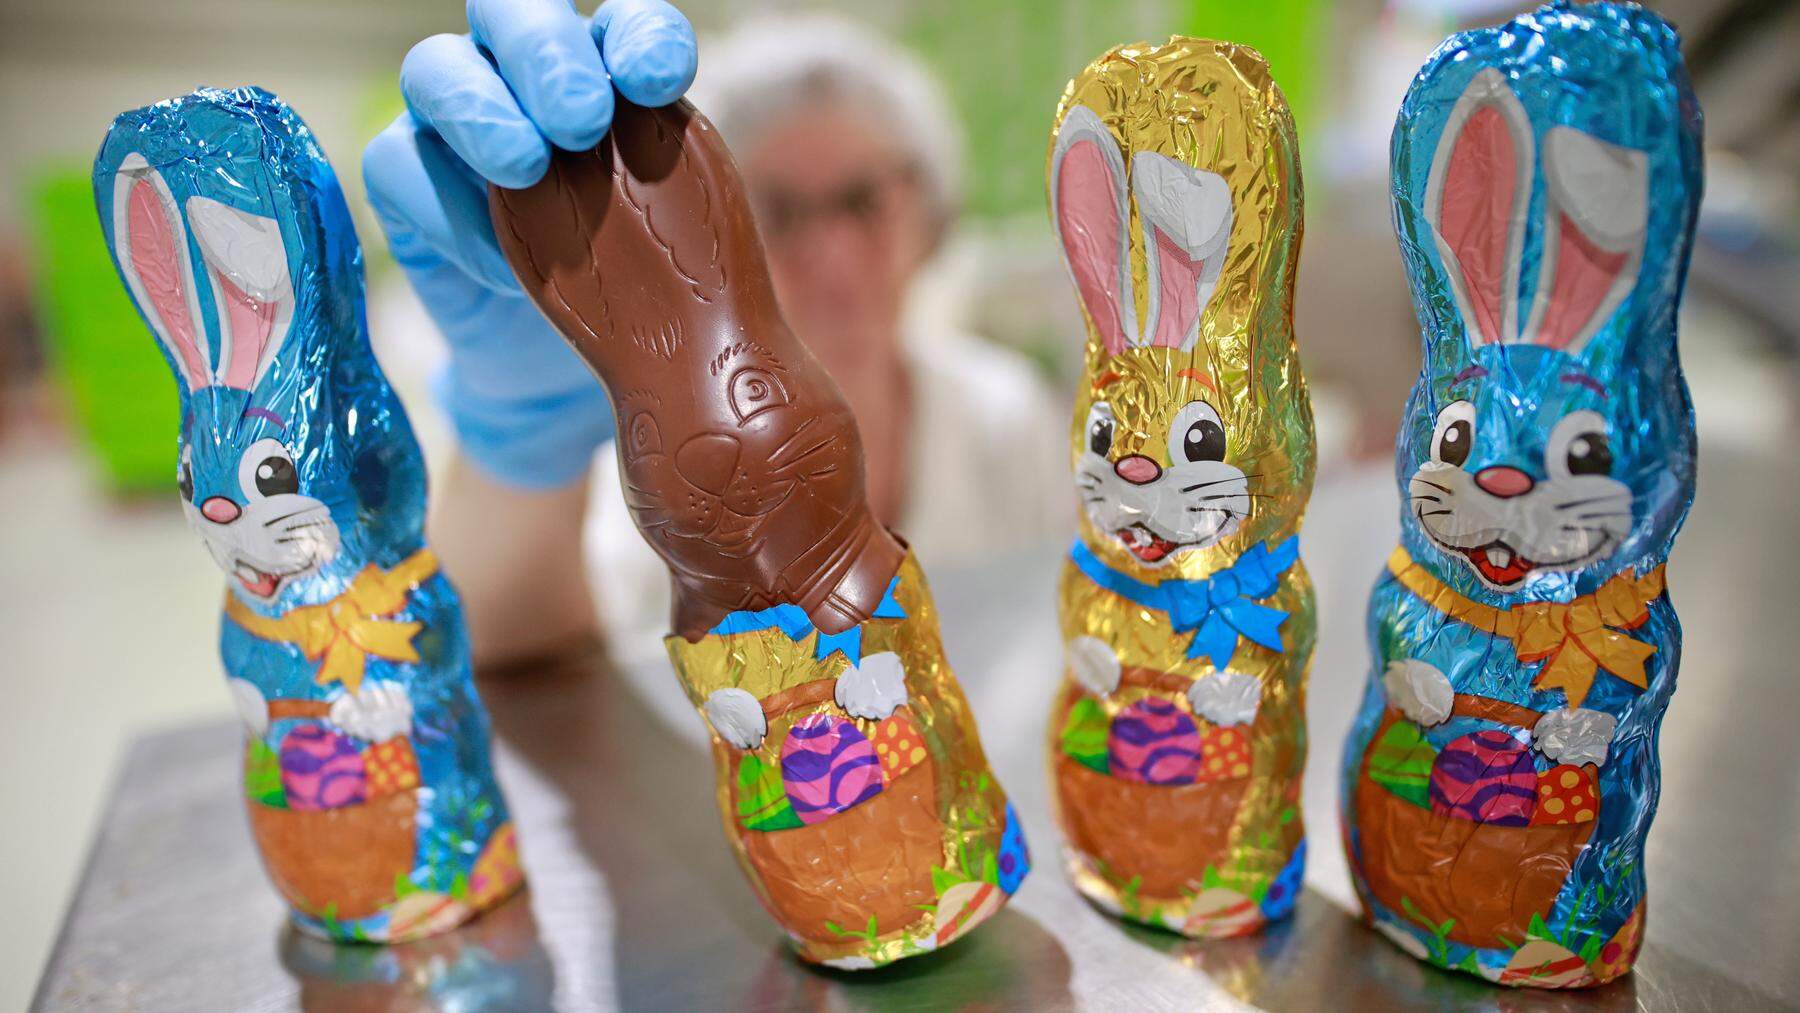 Auf dem Weg der Osterschokolade in Österreichs Regale naschen viele mit. Die Kakaobauern aber werden schamlos ausgebeutet.